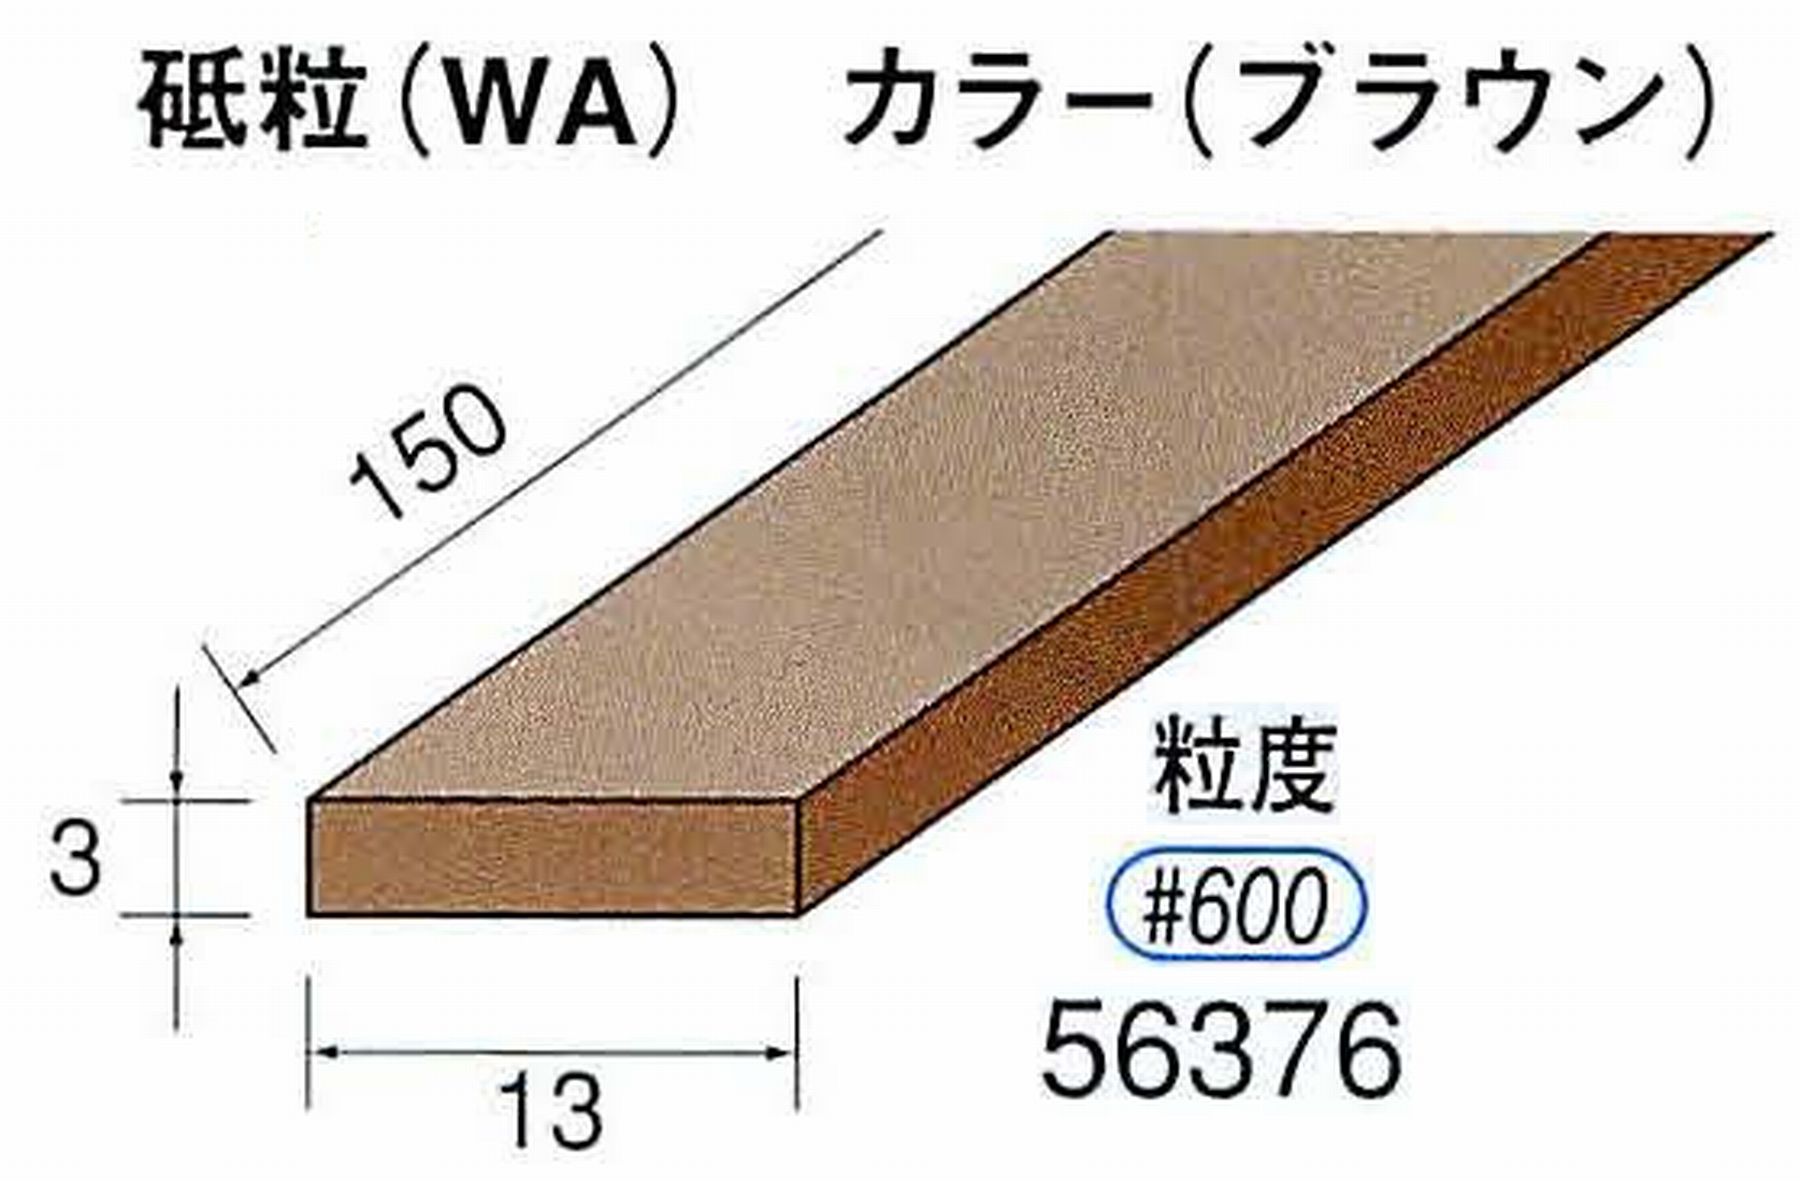 ナカニシ/NAKANISHI スティック砥石 ブラウン・フィニッシュシリーズ 砥粒(WA) 56376